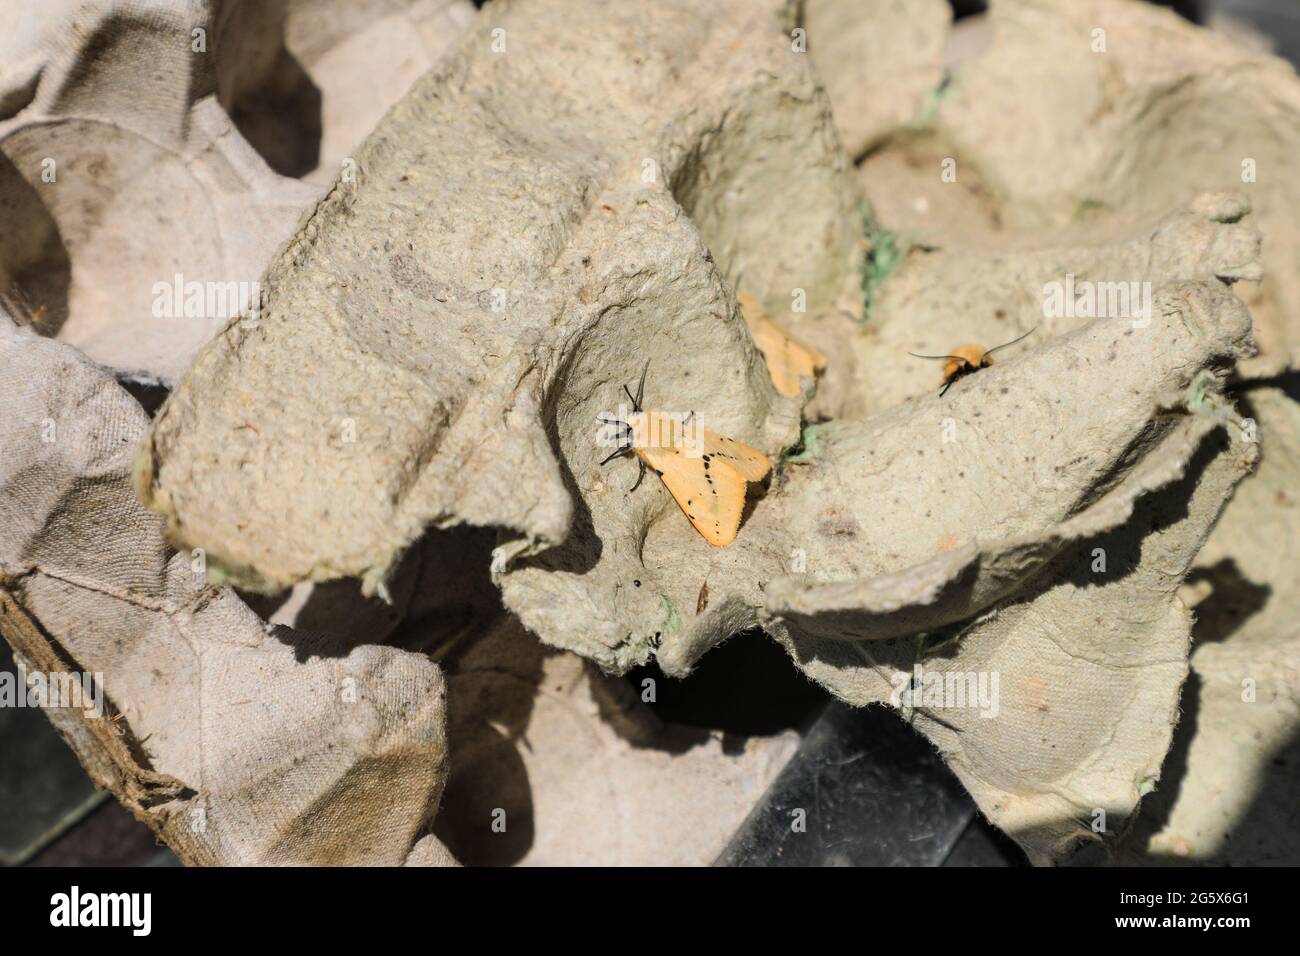 3 papillons d'Ermine de Buff (Spilarctia luteum) qui avaient été capturés dans un piège à papillons durant la nuit, Hickling Broad, Norfolk, Angleterre, Royaume-Uni Banque D'Images